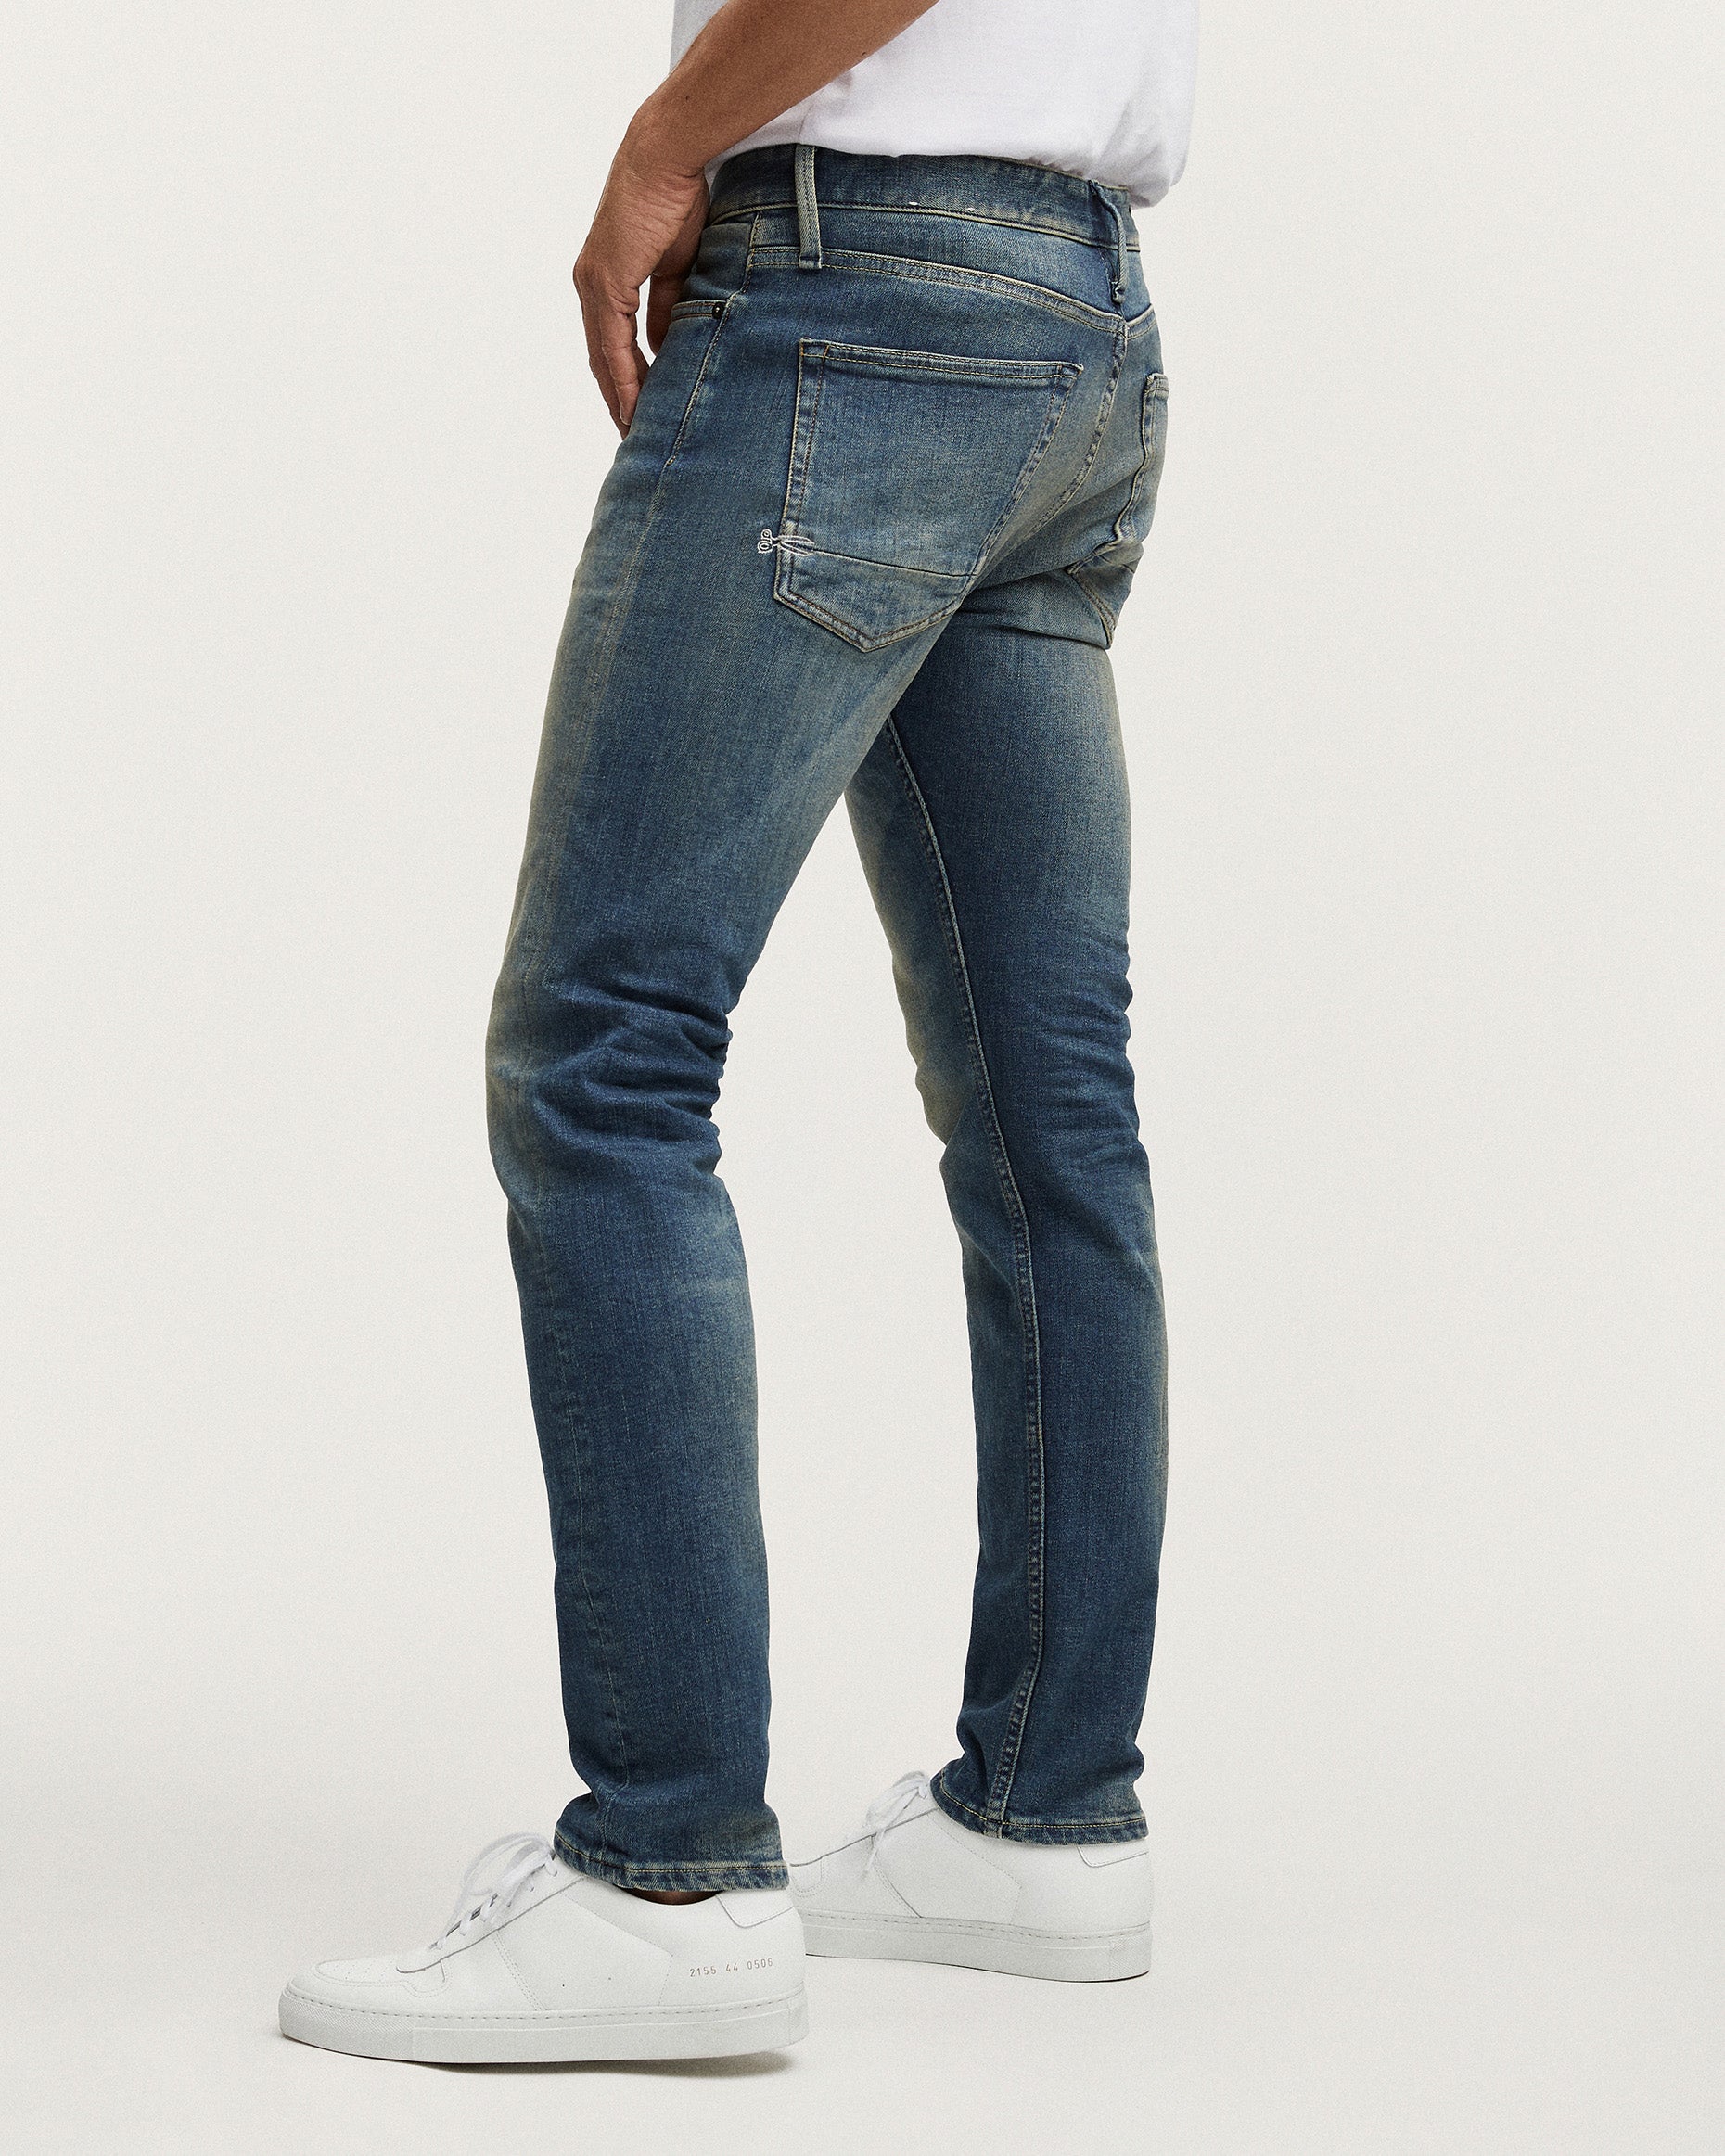 Denham Razor Made In Italy Slim Tapered Mens Jeans - MIIMW / Medium Wa ...